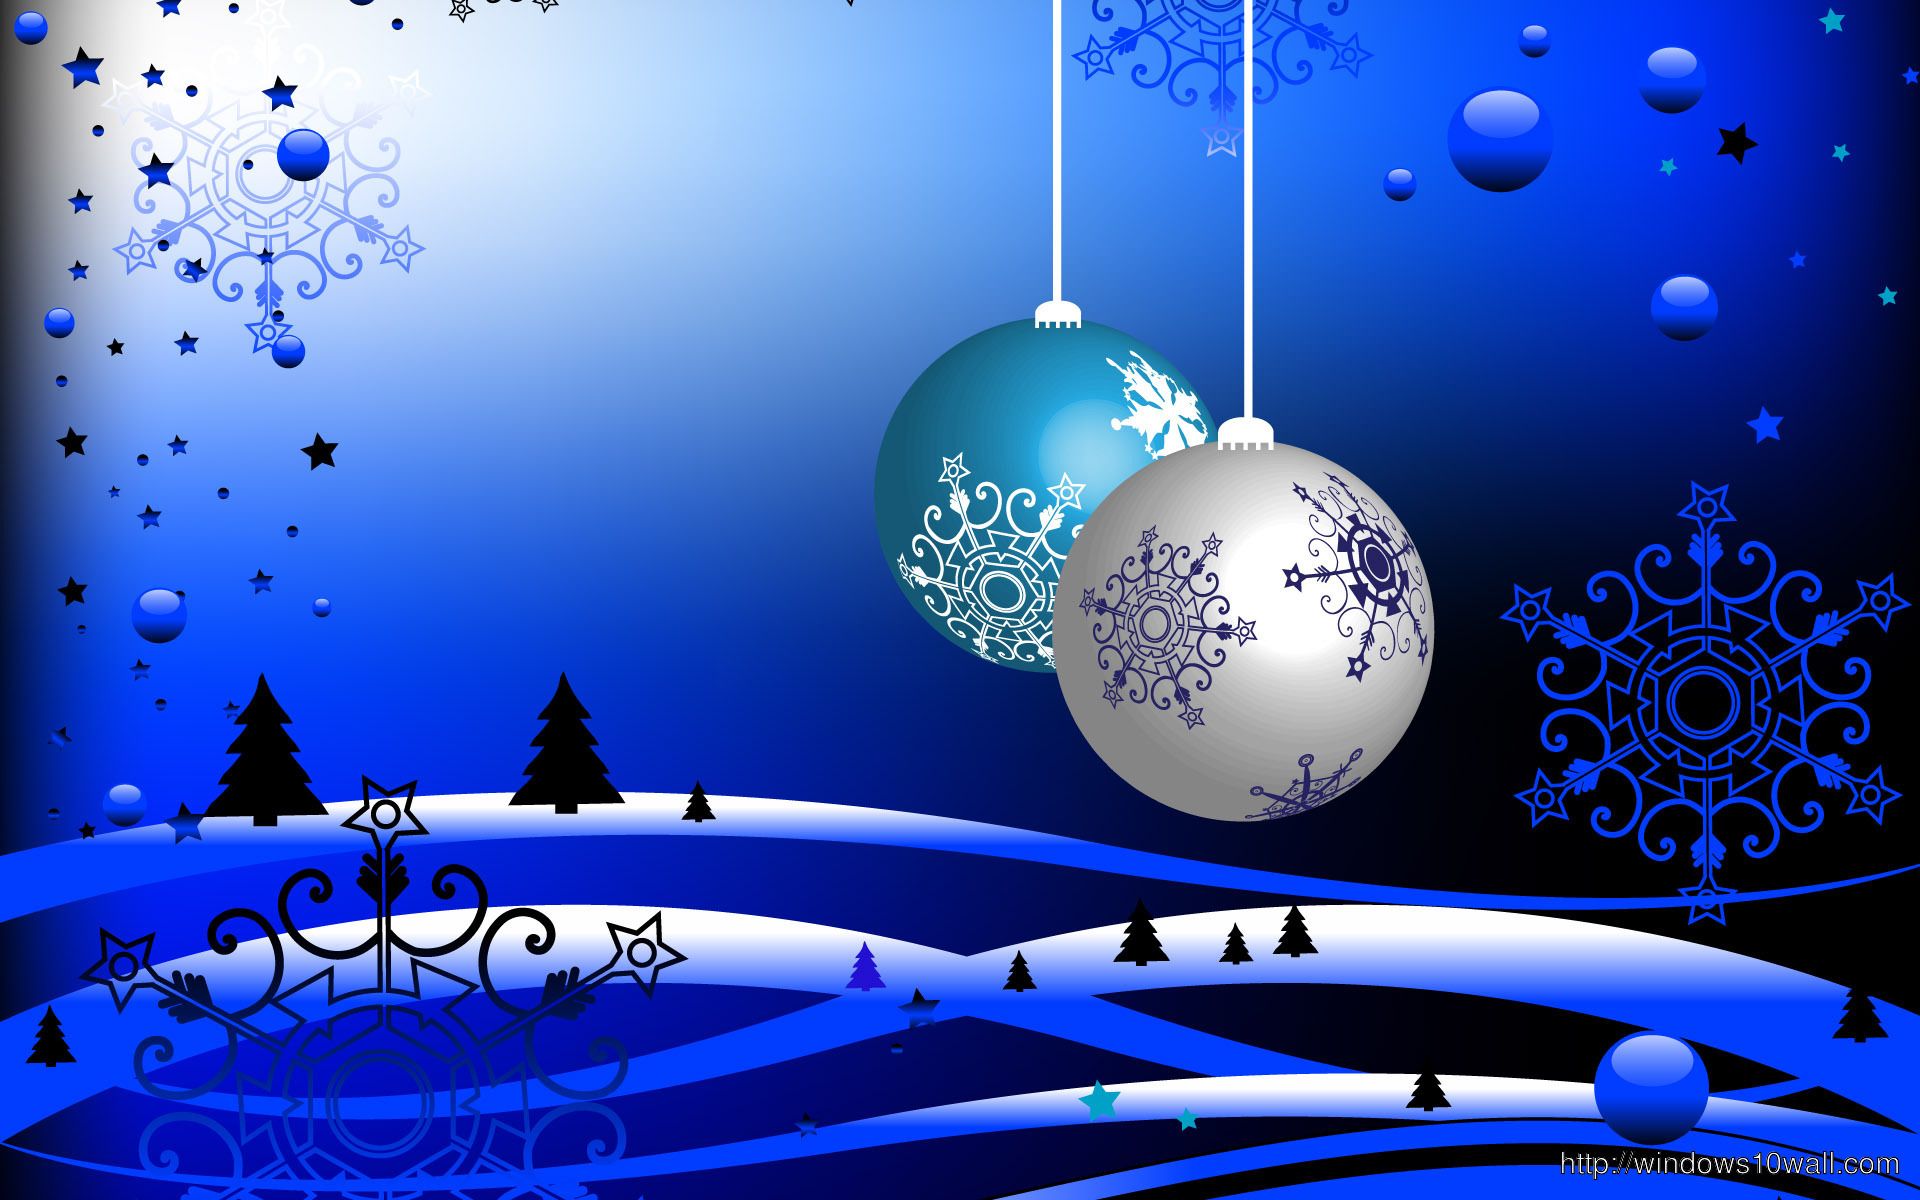 Hình nền Windows 10 Giáng sinh: Gợi những kí ức đẹp và làm tăng sự chân thật của cảm giác Giáng sinh với hình nền Windows 10 Giáng sinh lung linh. Hãy truy cập ngay hình ảnh để có được những hình nền giáng sinh xinh đẹp đang chờ bạn khám phá và tạo một không khí noel thật ấm cúng trên máy tính của bạn.